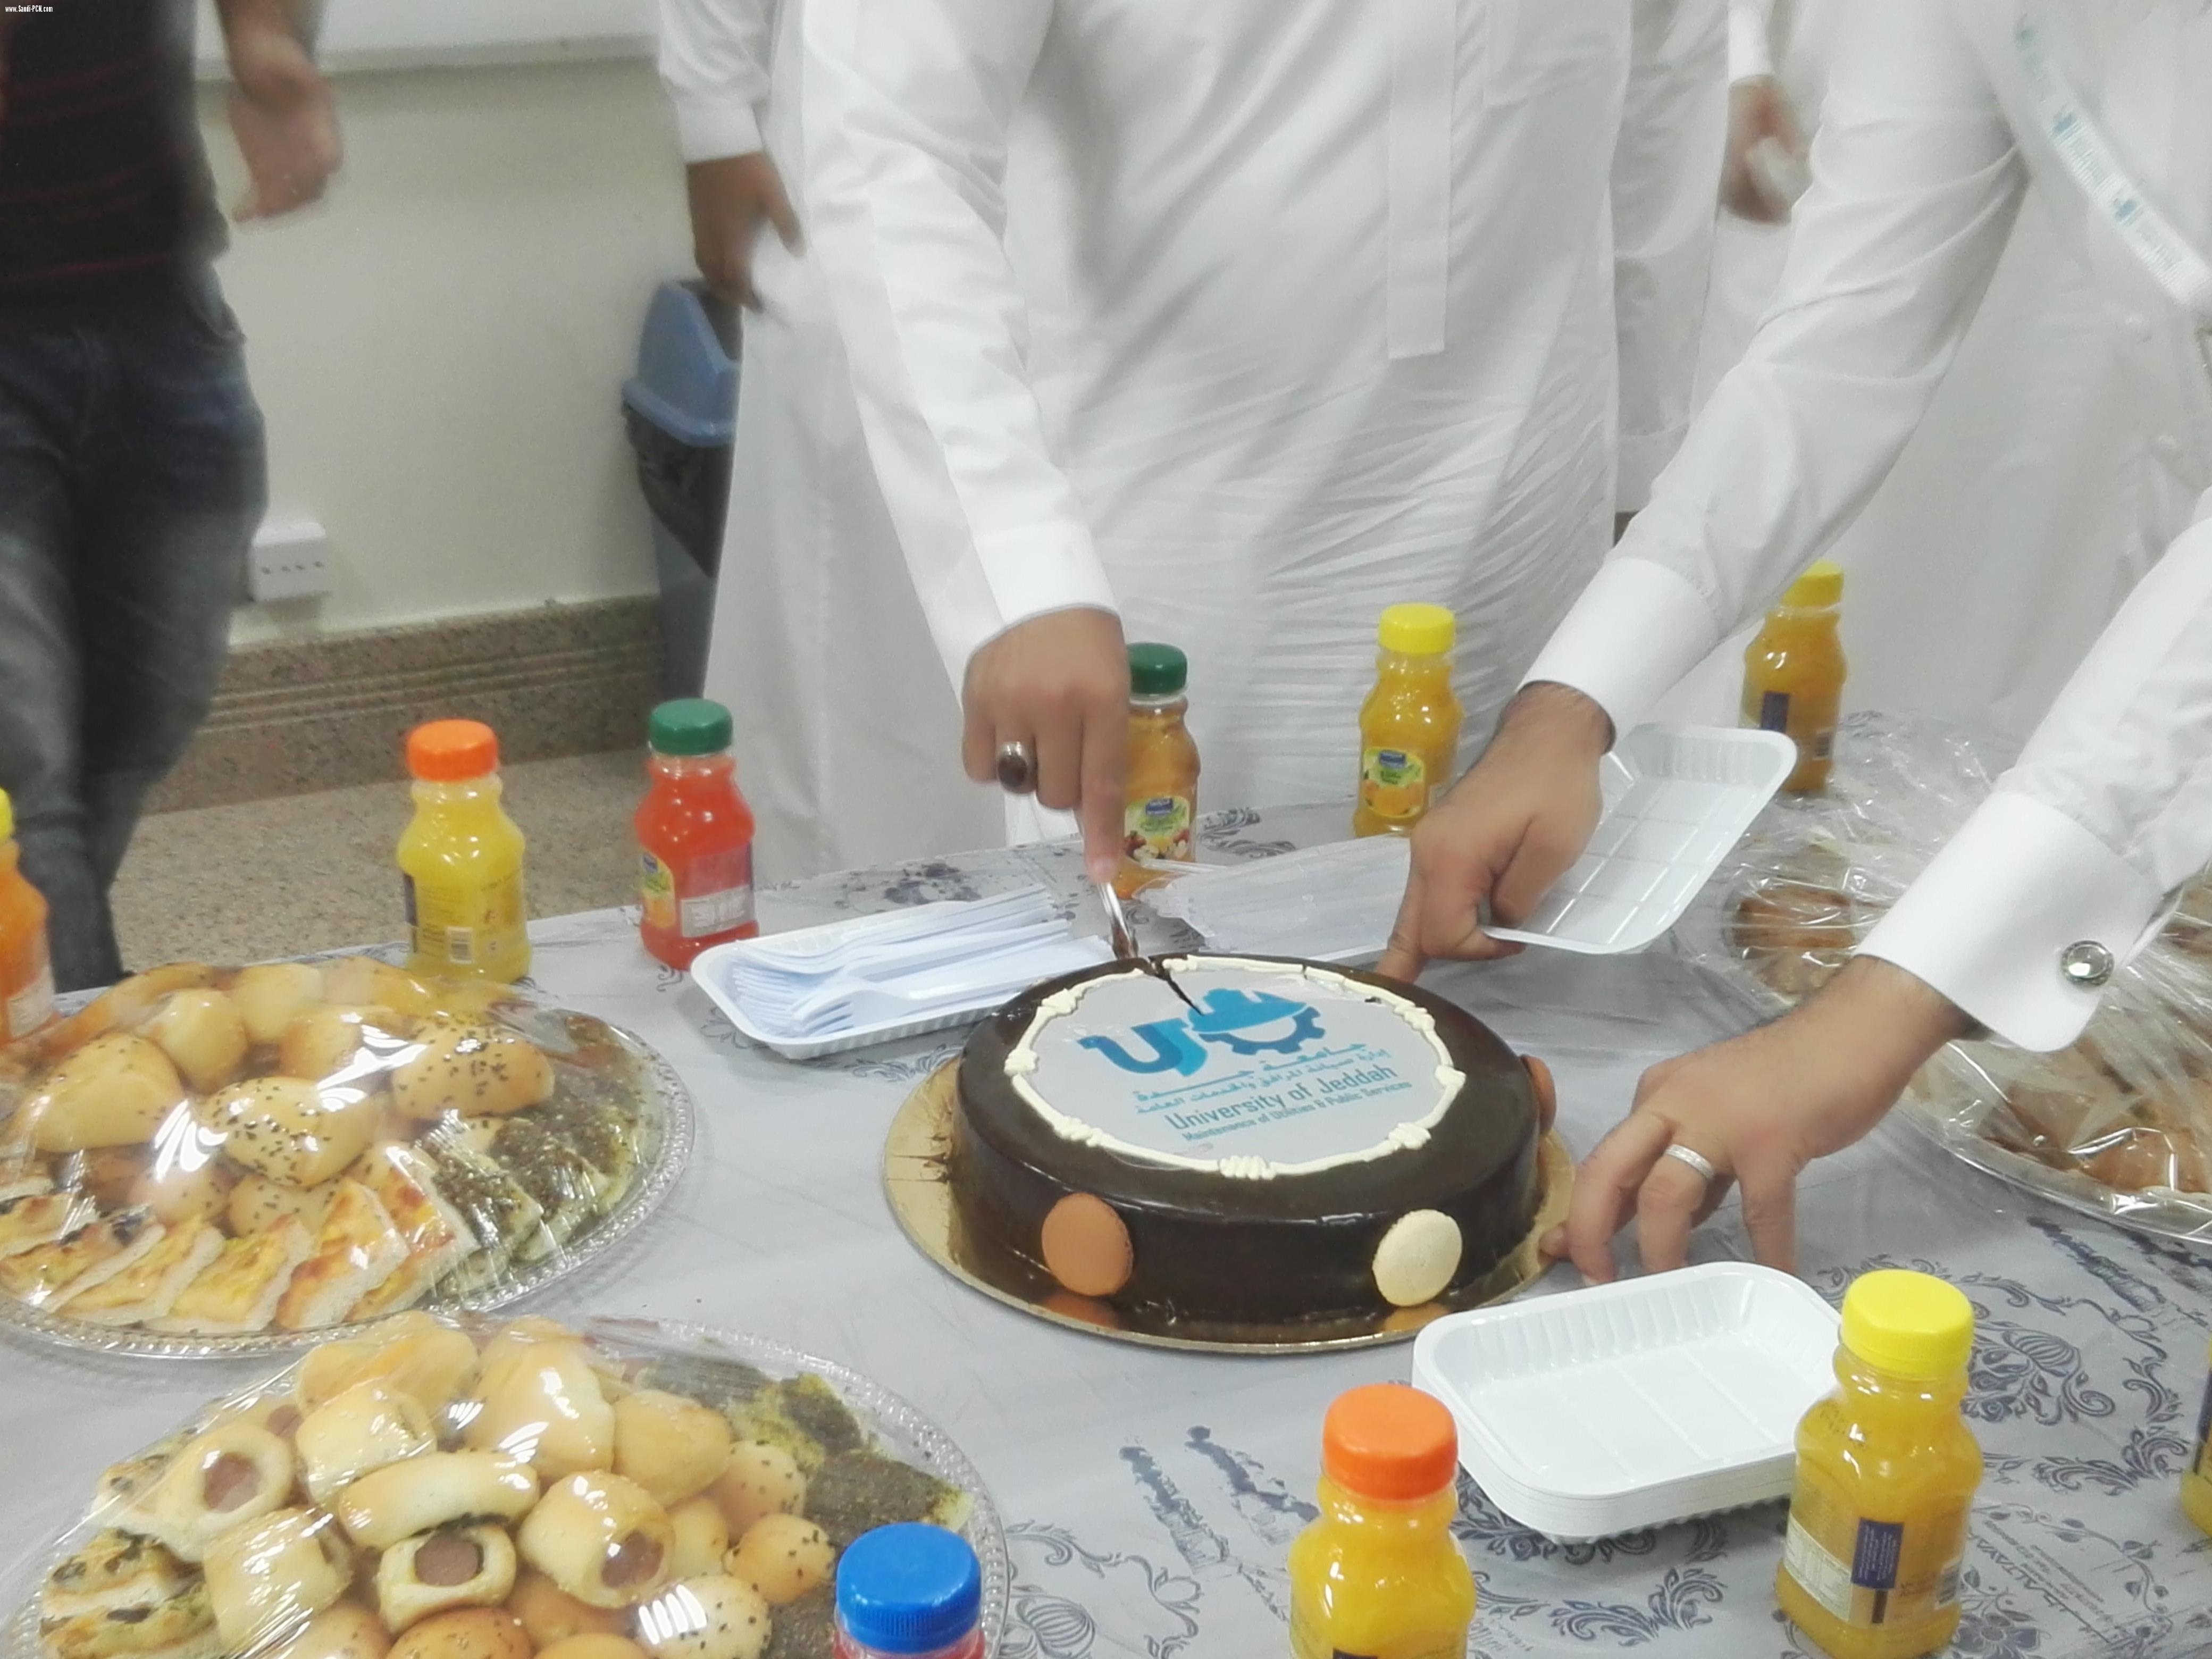 احتفال موظفوا قسم صيانة المرافق والخدمات العامه بجامعة جدة بتجديد تكليف م. محمد معدلي مديرا للإدارة